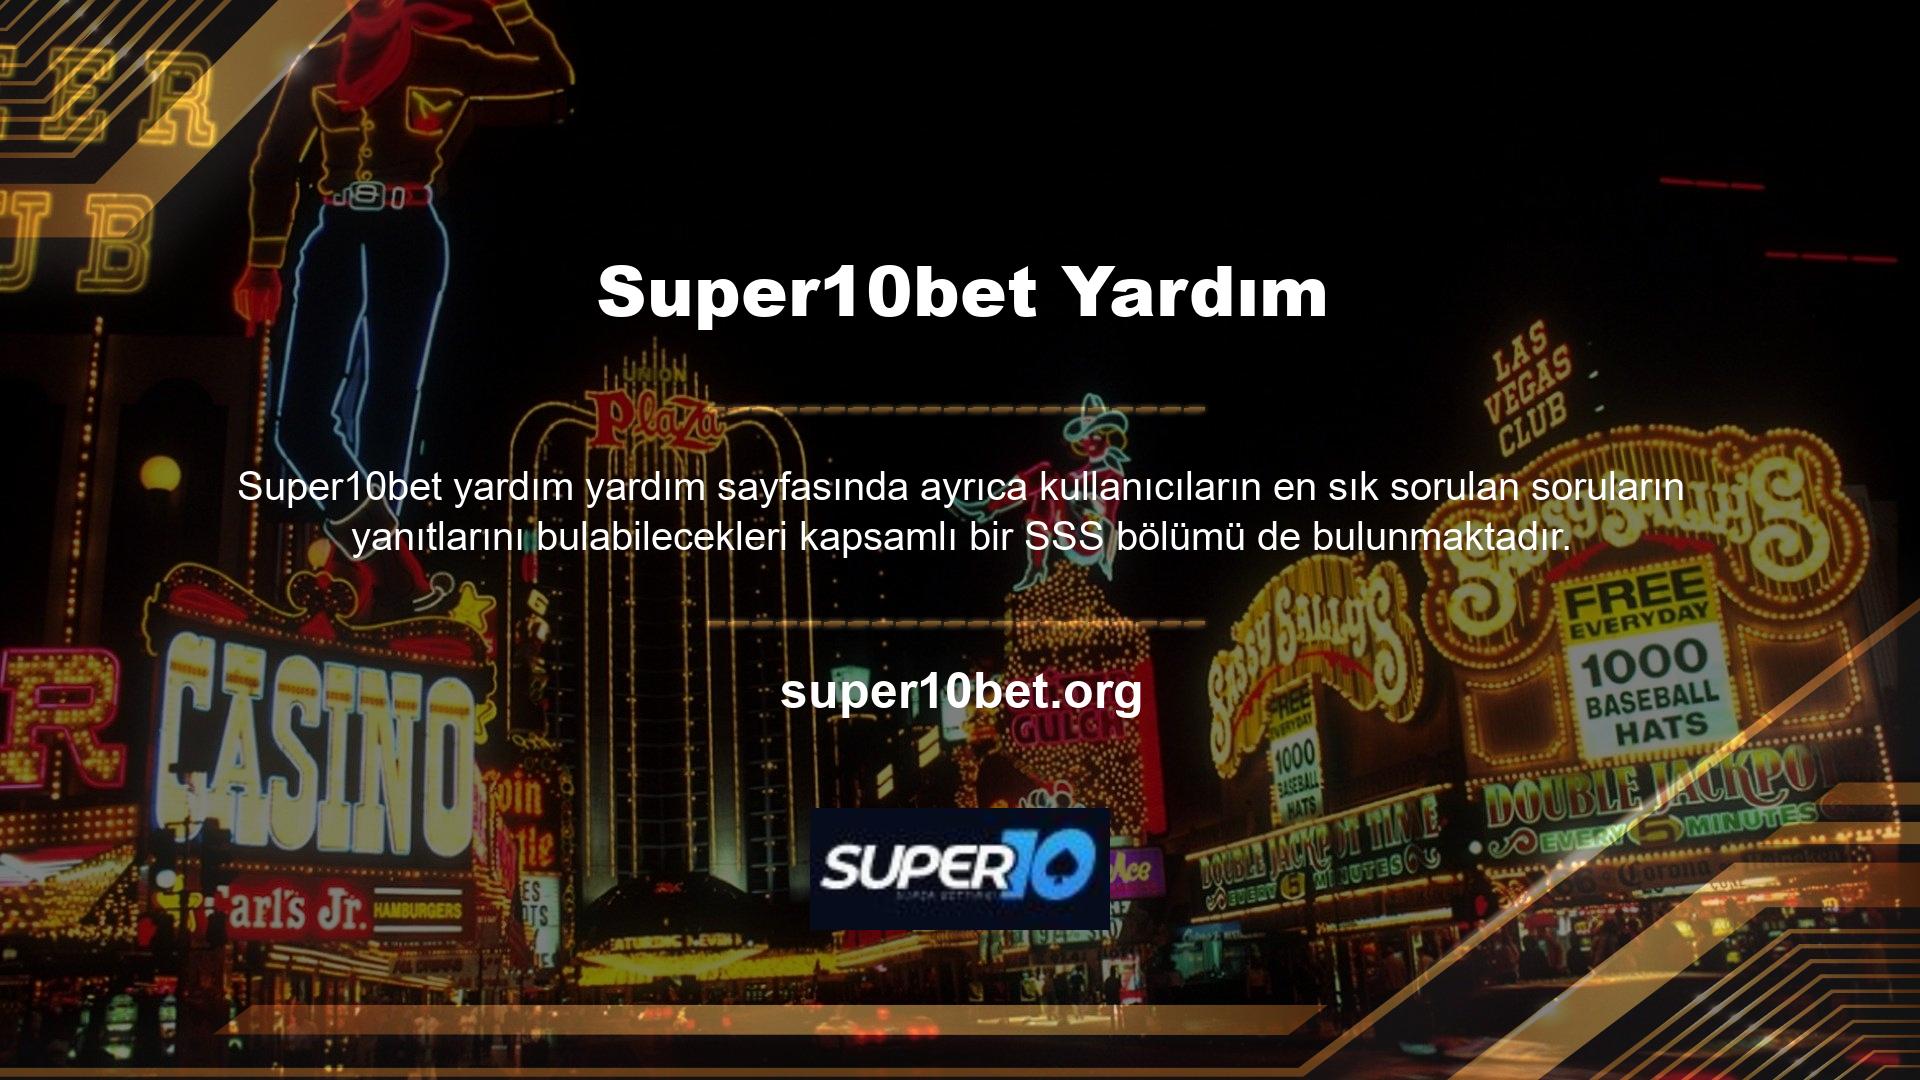 Super10bet online bahis sitesi, Türkiye'de canlı bahis sektörüne hızla giren ünlü casino ve spor bahis ofislerinden biridir